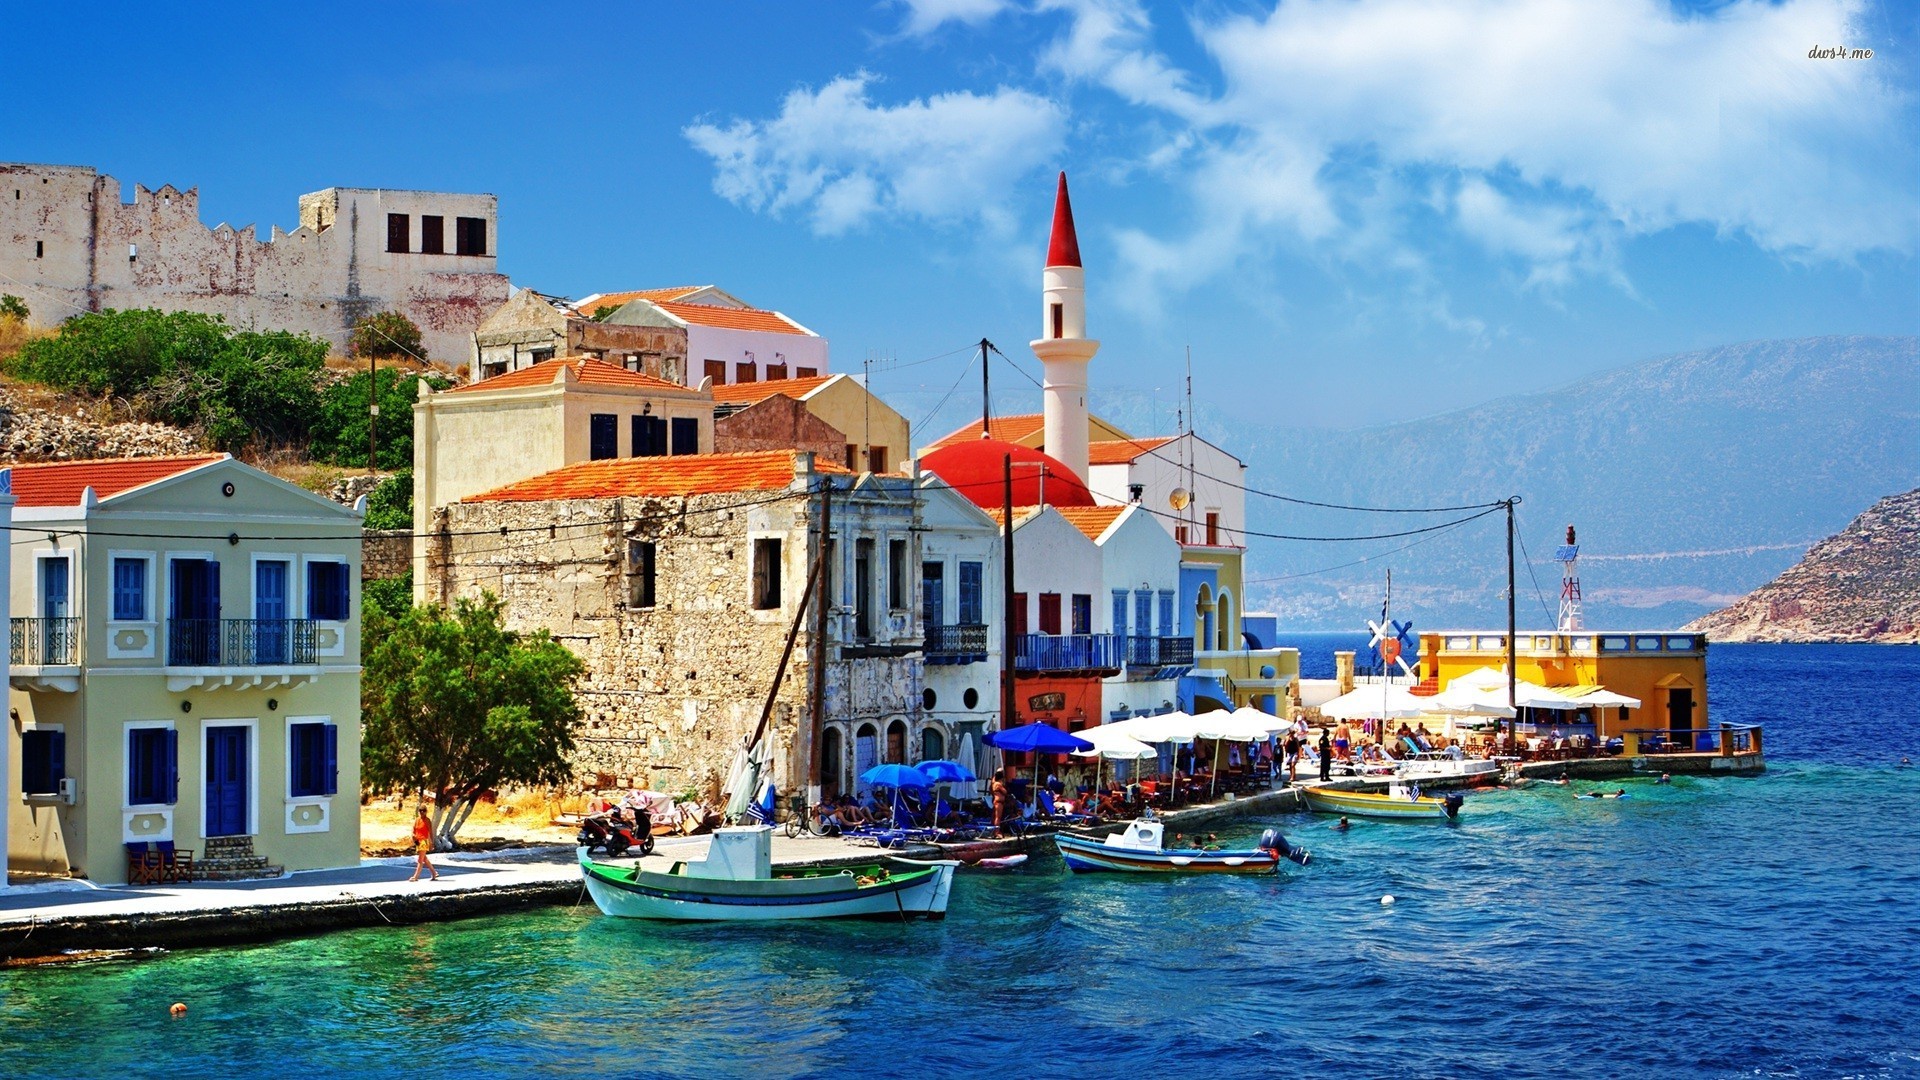 Tải miễn phí hình nền Hy Lạp - Hy Lạp được biết đến là một trong những địa điểm du lịch đẹp nhất thế giới, nơi có những cảnh quan tuyệt đẹp, một nền văn hóa phong phú và những con người thân thiện. Hãy tải ngay hình nền miễn phí của Hy Lạp và trang trí cho máy tính của bạn. Tận hưởng cảm giác \